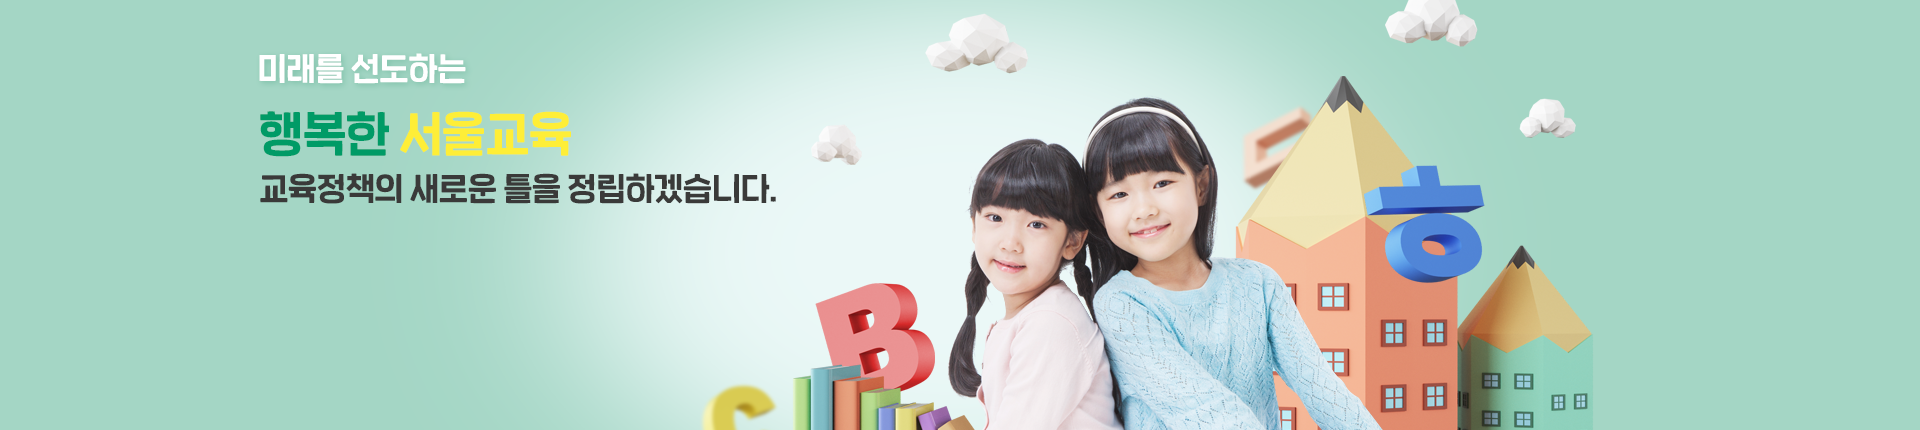 미래를 선도하는 행복한 서울교육 교육정책의 틀을 정립하겠습니다.